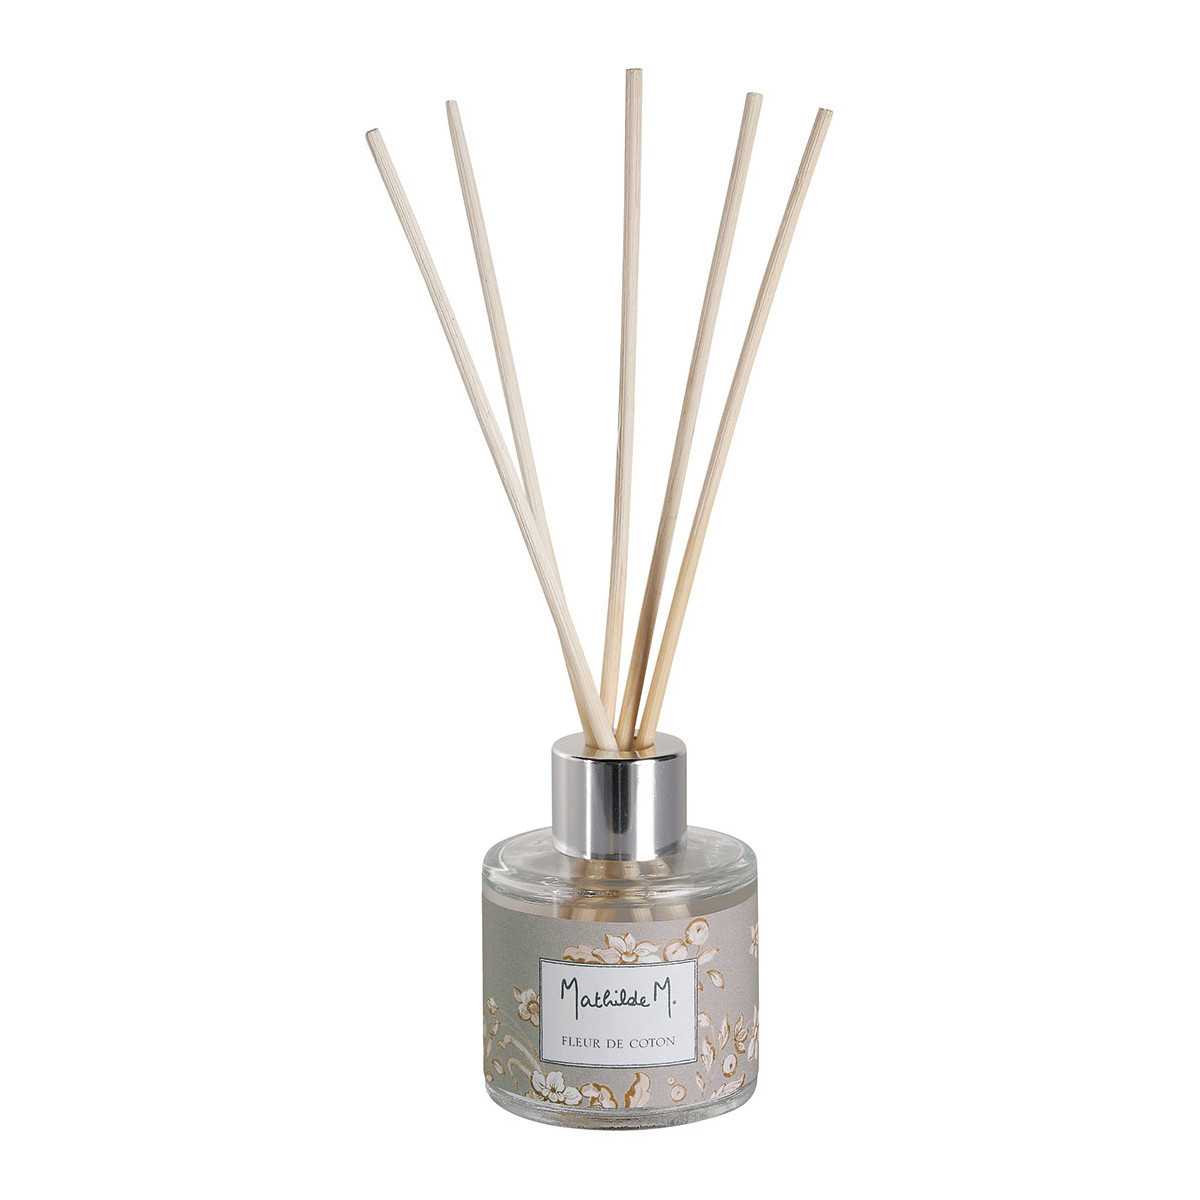 INTERIEUR- DECORATION|Parfüm-Diffusorbox Escale à Sintra 40 ml - Fleur de CotonMATHILDE MDiffusoren + Nebel